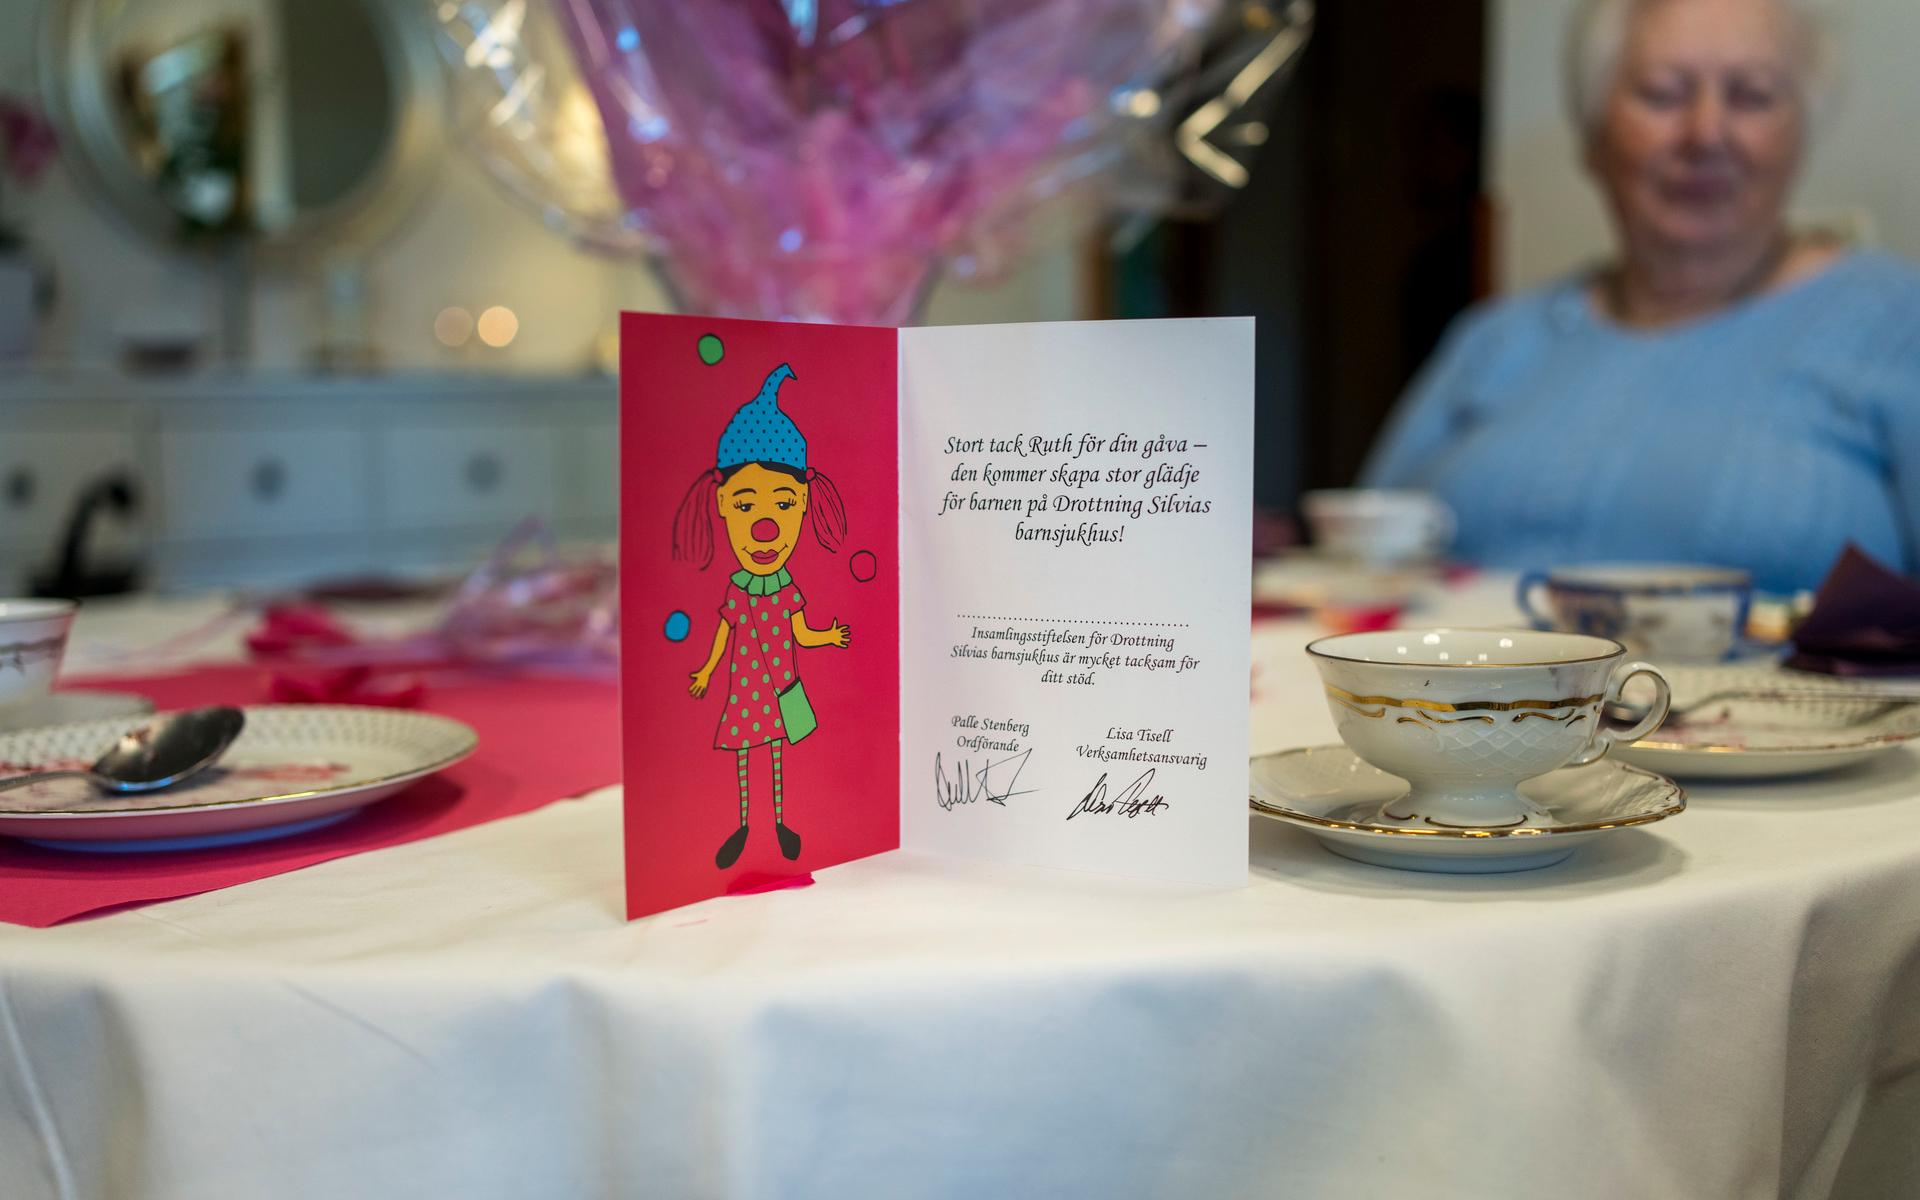 &quot;Stort tack Ruth för din gåva – den kommer skapa stor glädje för barnen på Drottning Silvias barnsjukhus!” står det på kortet, som pryds av en clown. Sjukhusclowner tillhör det som stiftelsen bekostar.